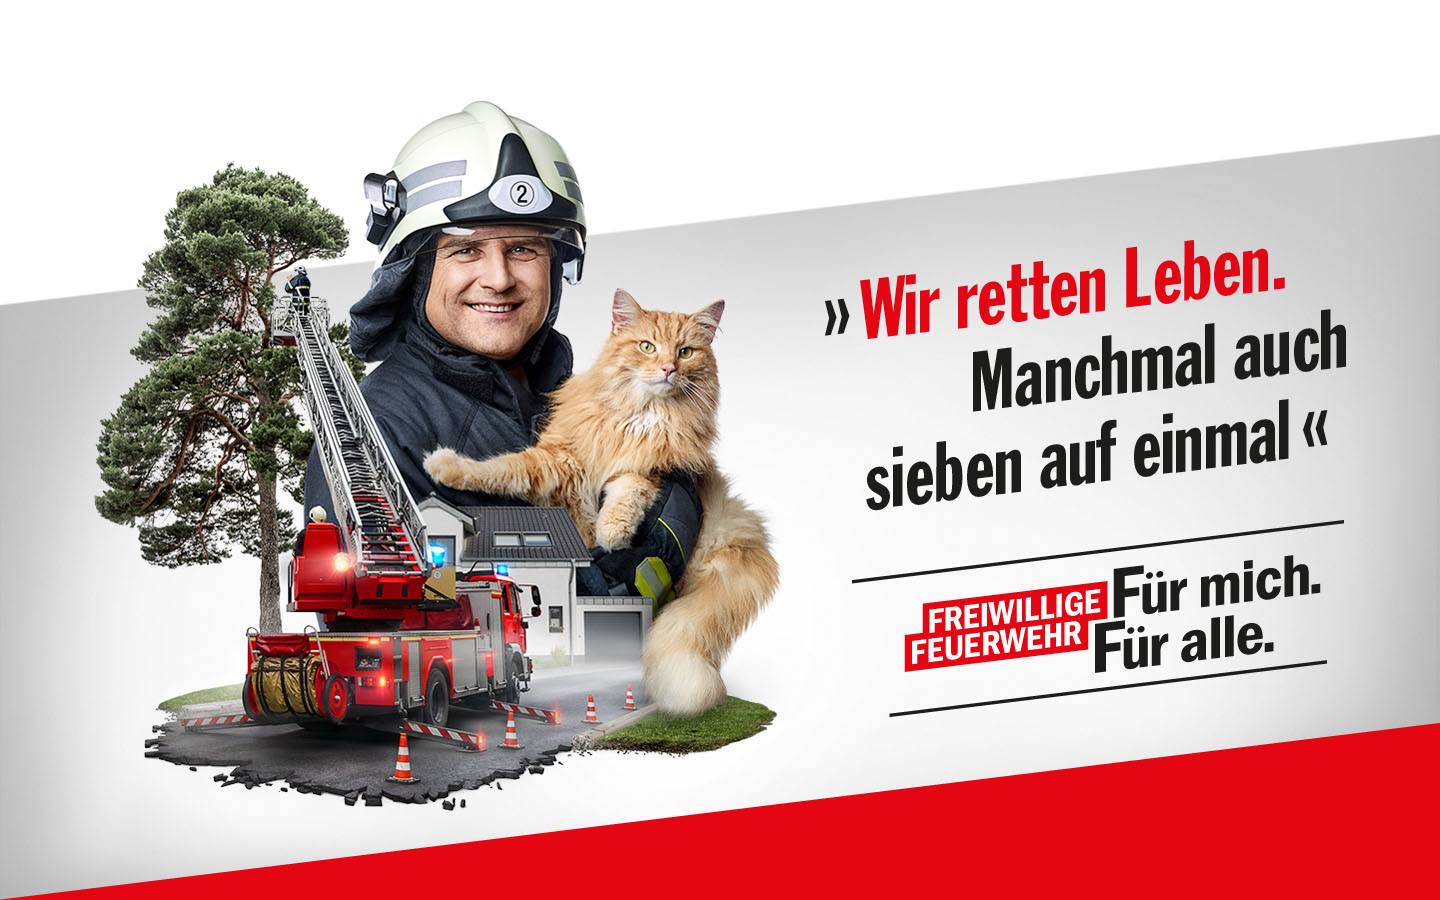 Porträt eines Feuerwehrmannes mit Katze, daneben Leiterwagen, der Katze aus einem Baum rettet. Schriftzug: Wir retten Leben. Manchmal auch sieben auf einmal. Freiwillige Feuerwehr: Für mich. Für alle.